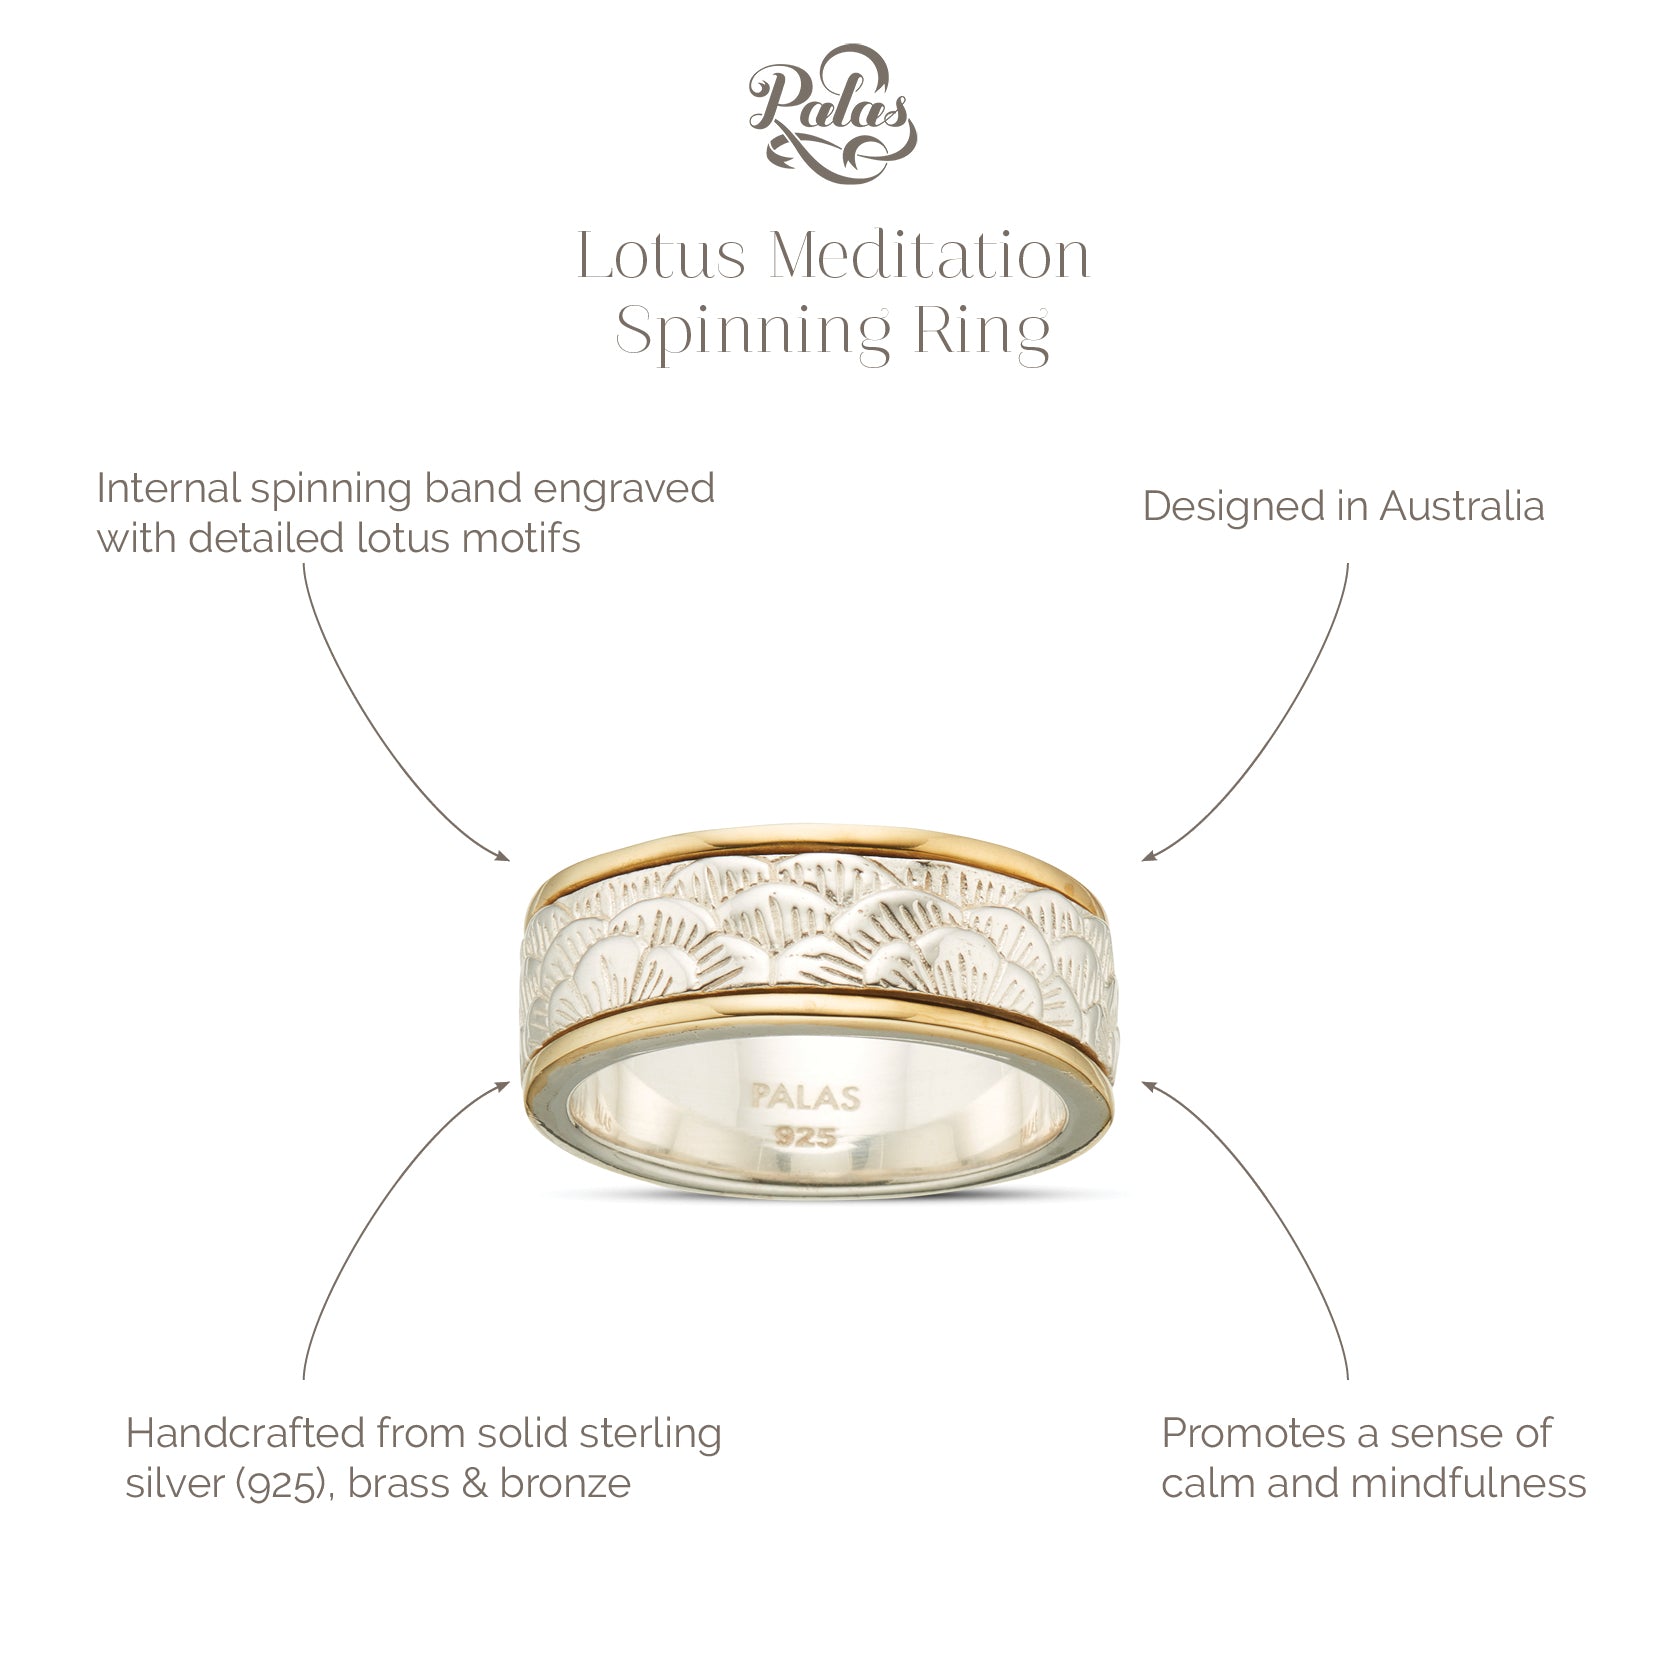 Lotus meditation spinning ring